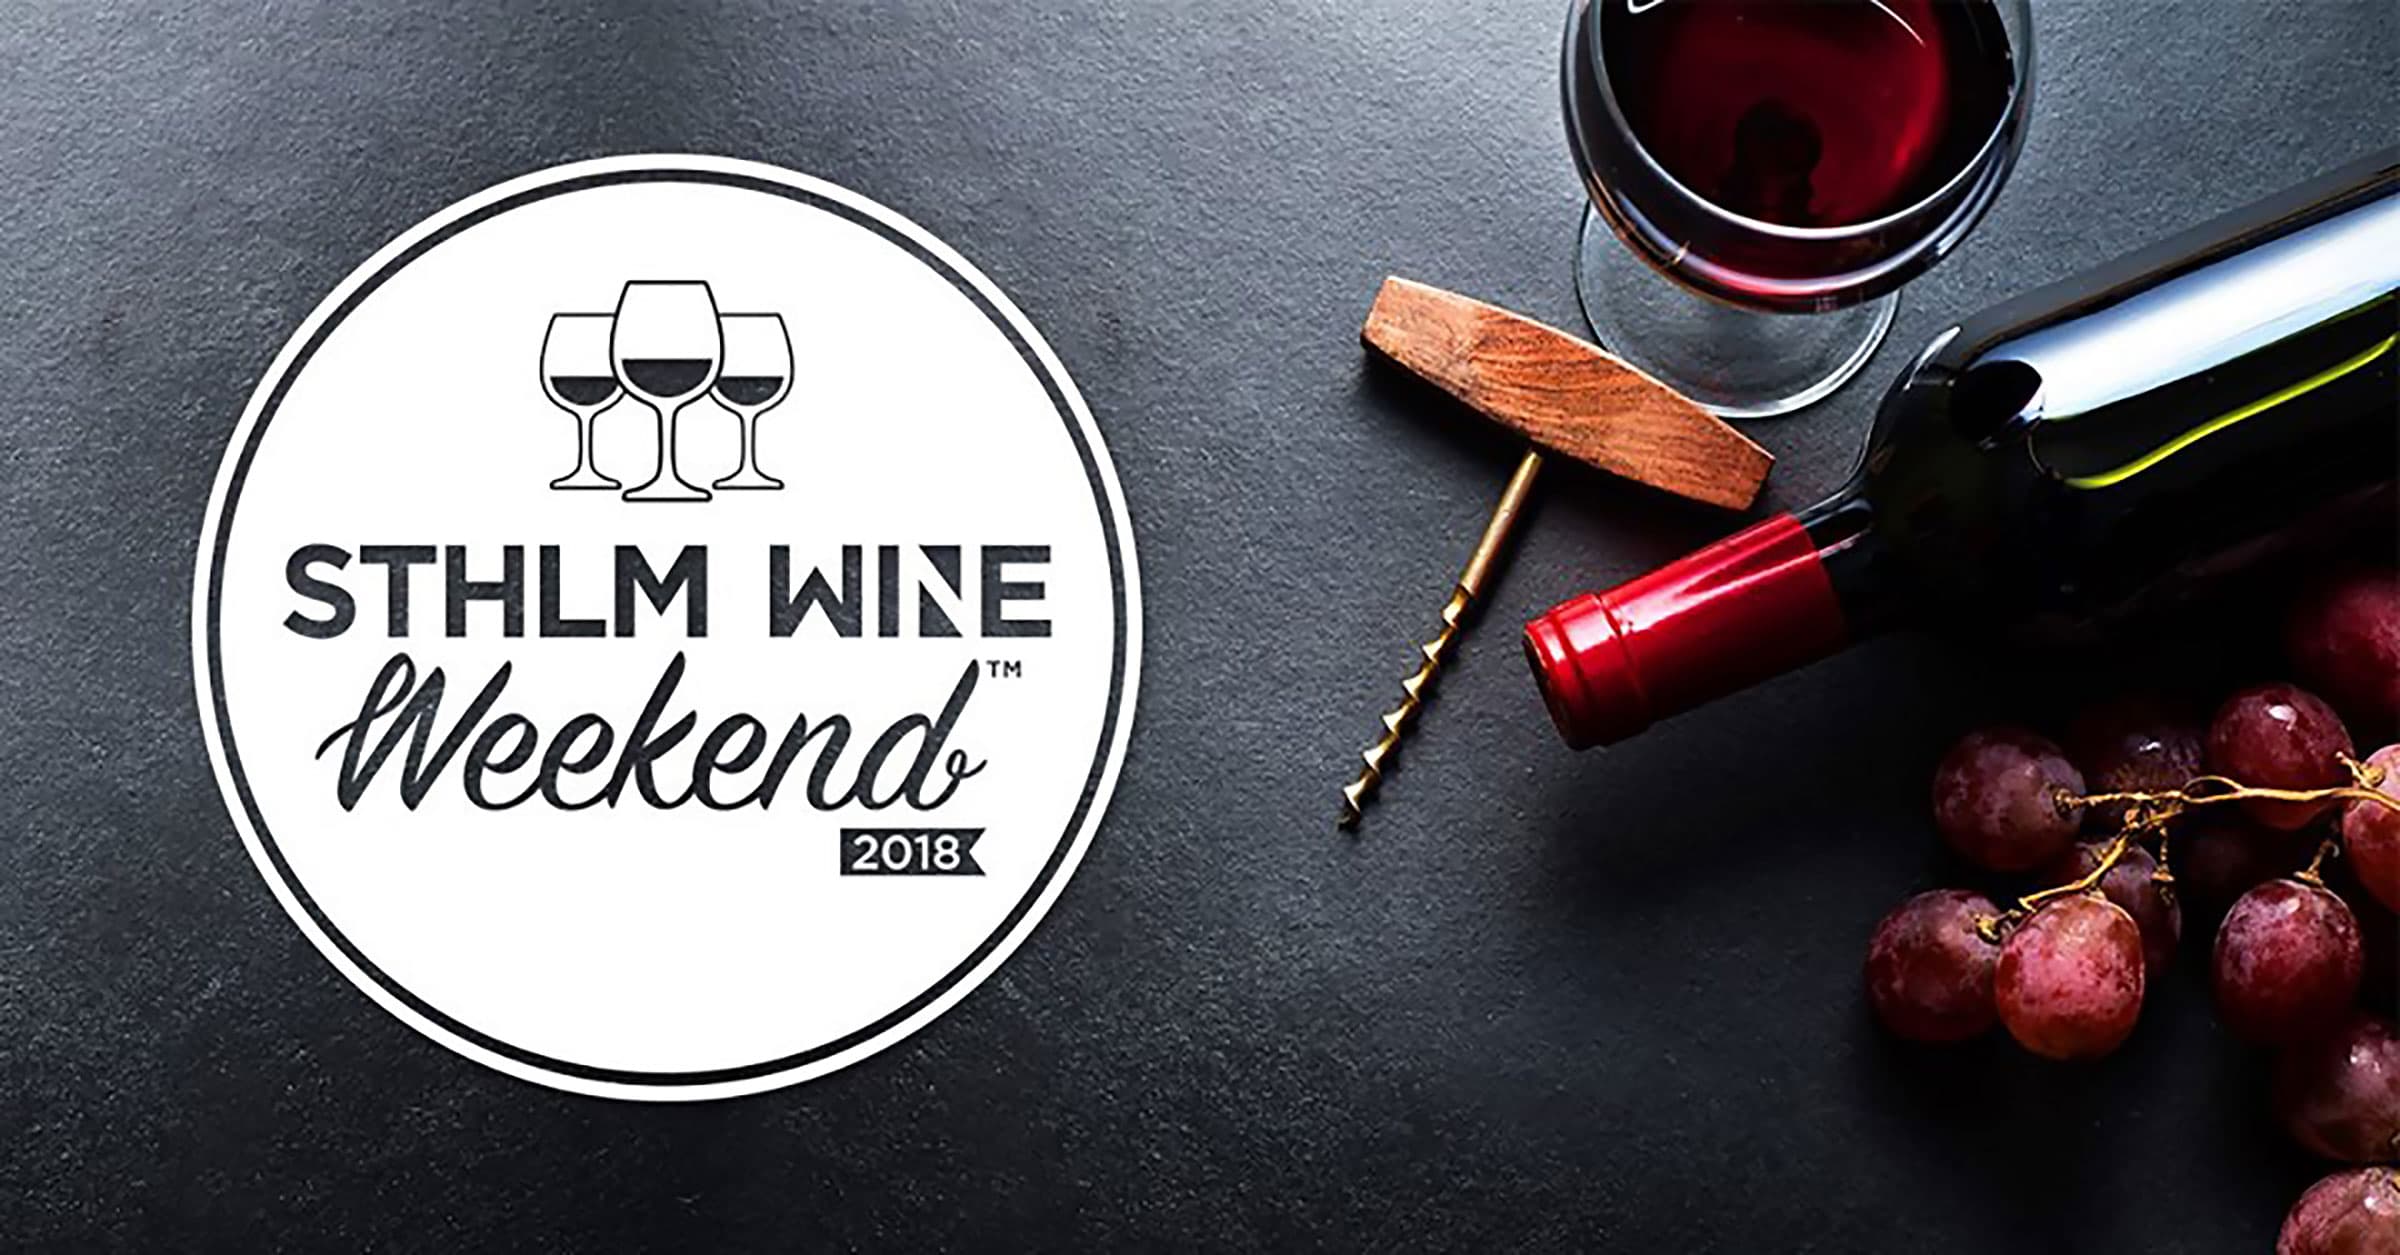 Sthlm Wine Weekend – Stockholms nya mötesplats för vin!